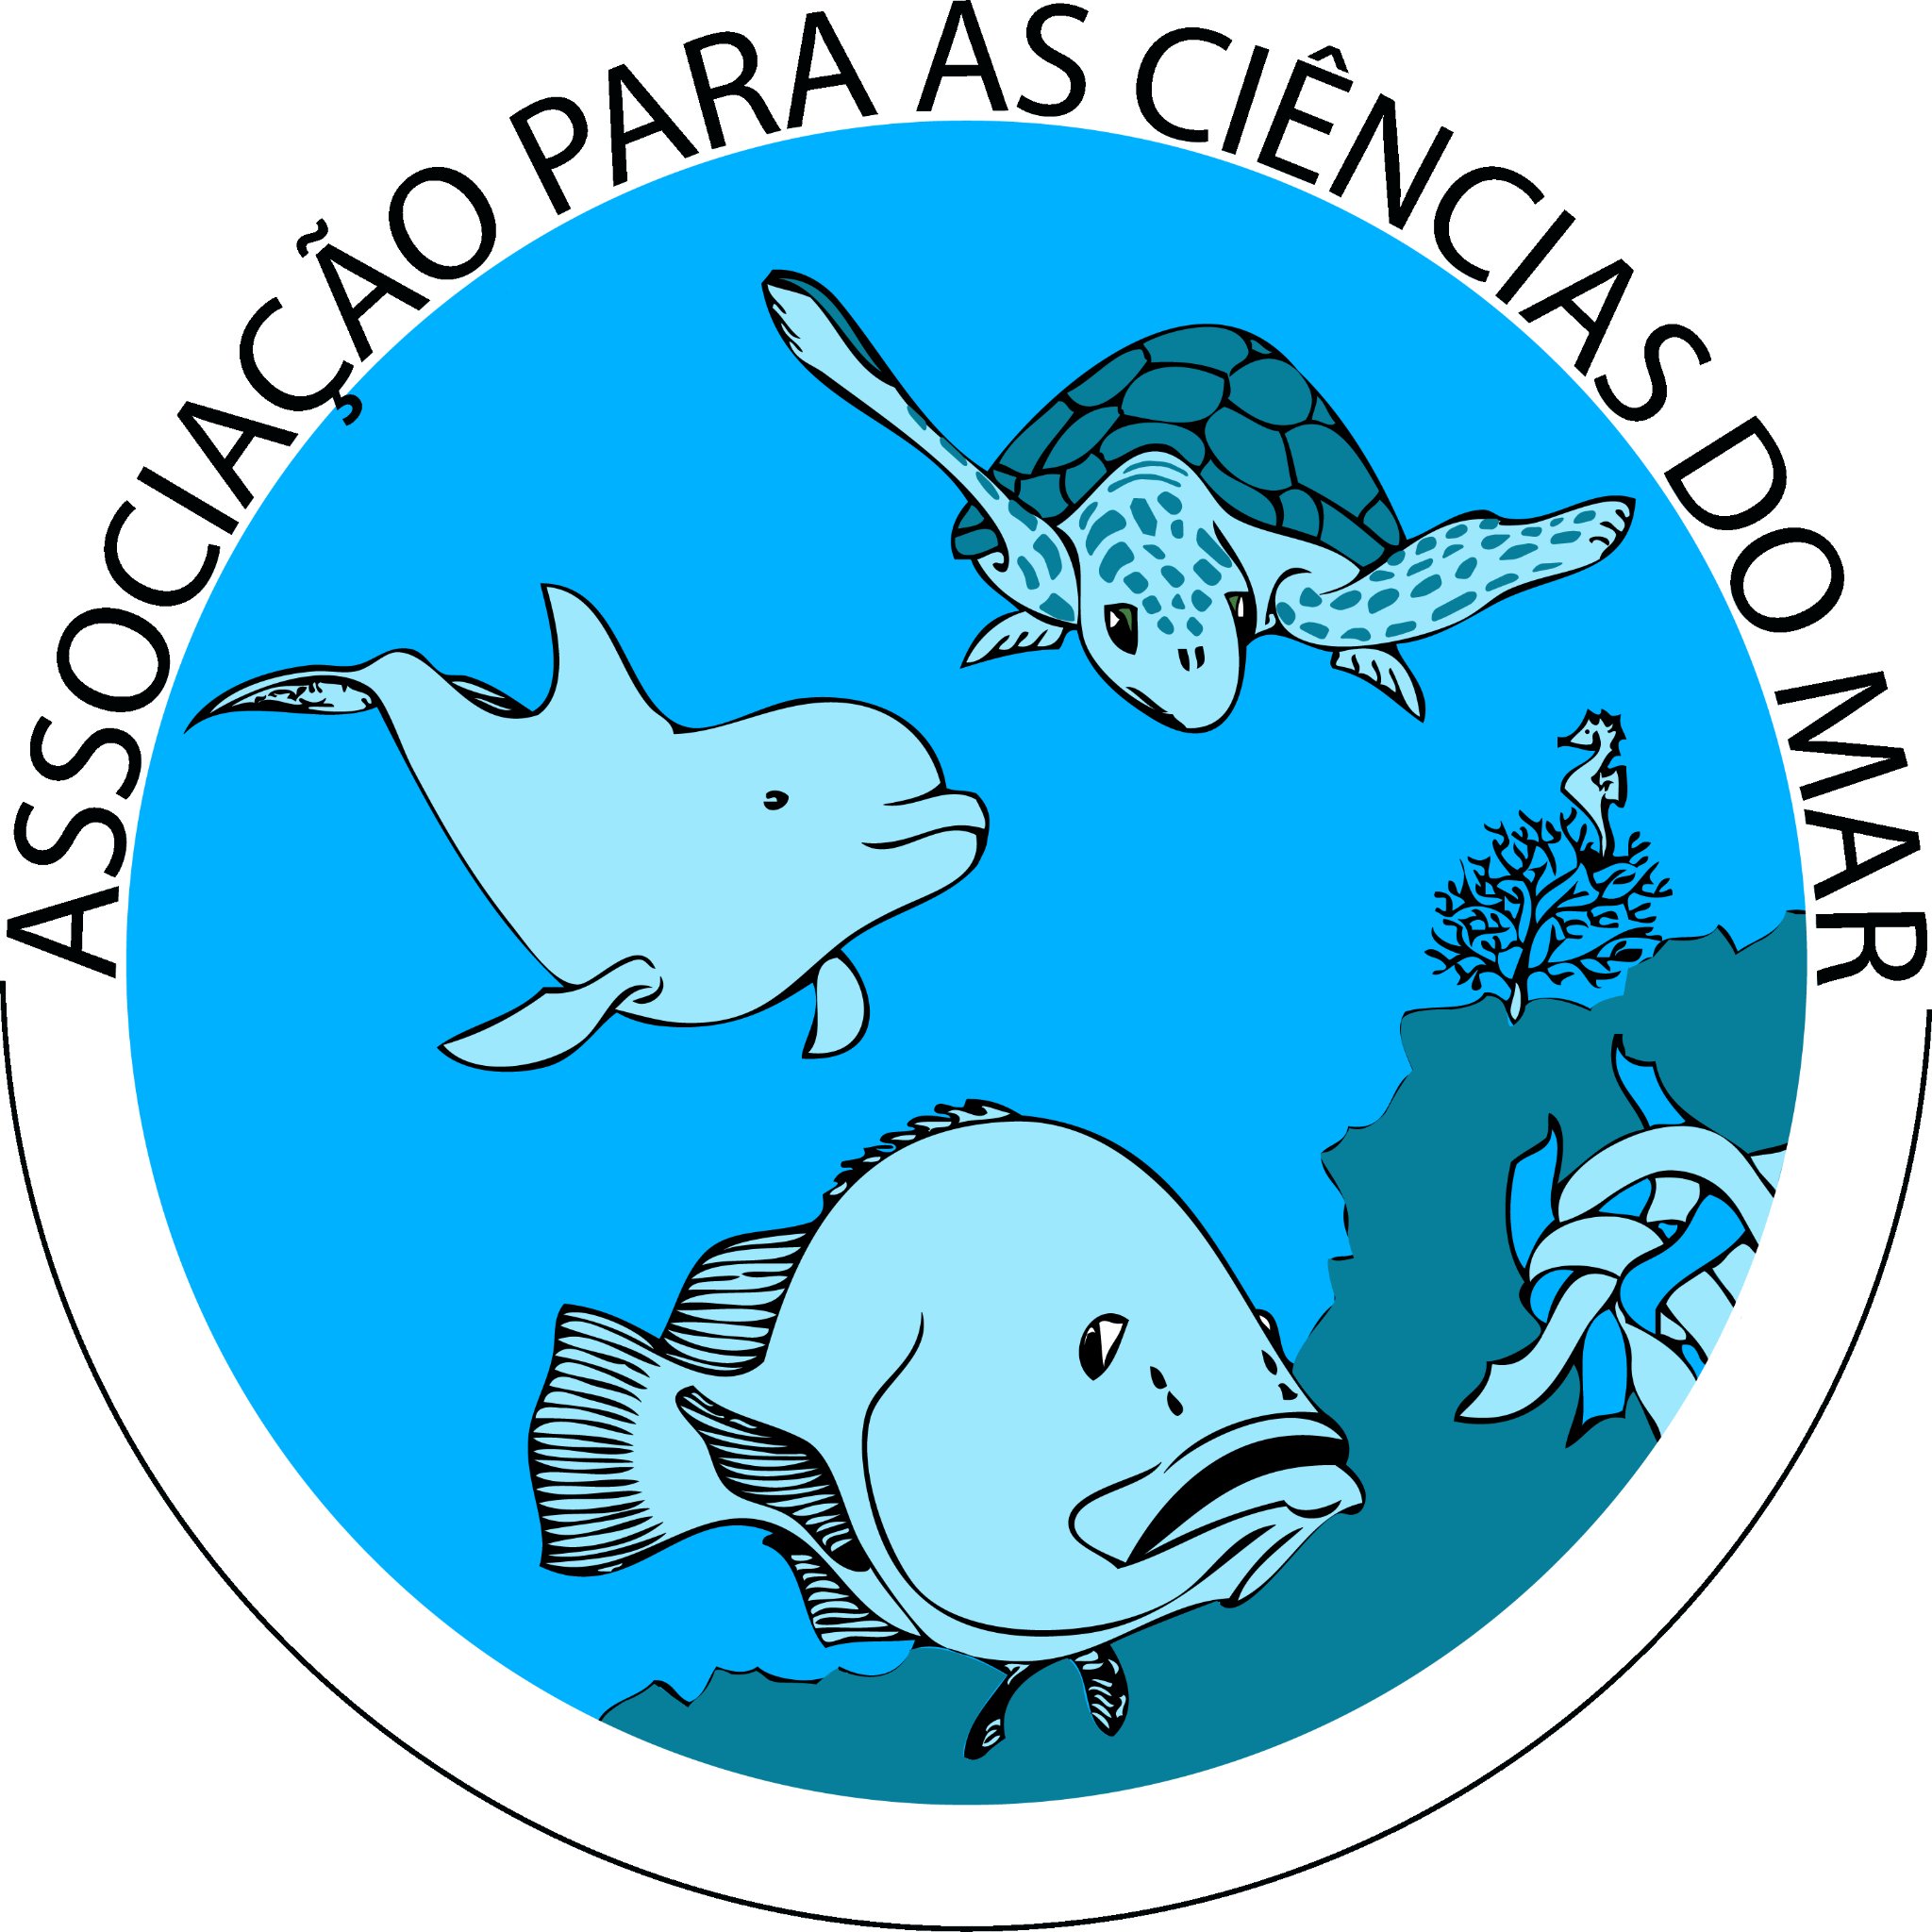 Conservação Cetáceos | Cetaceans conservation 🐬🐳 Investigação | Research
Sensibilização ambiental | Environmental awareness